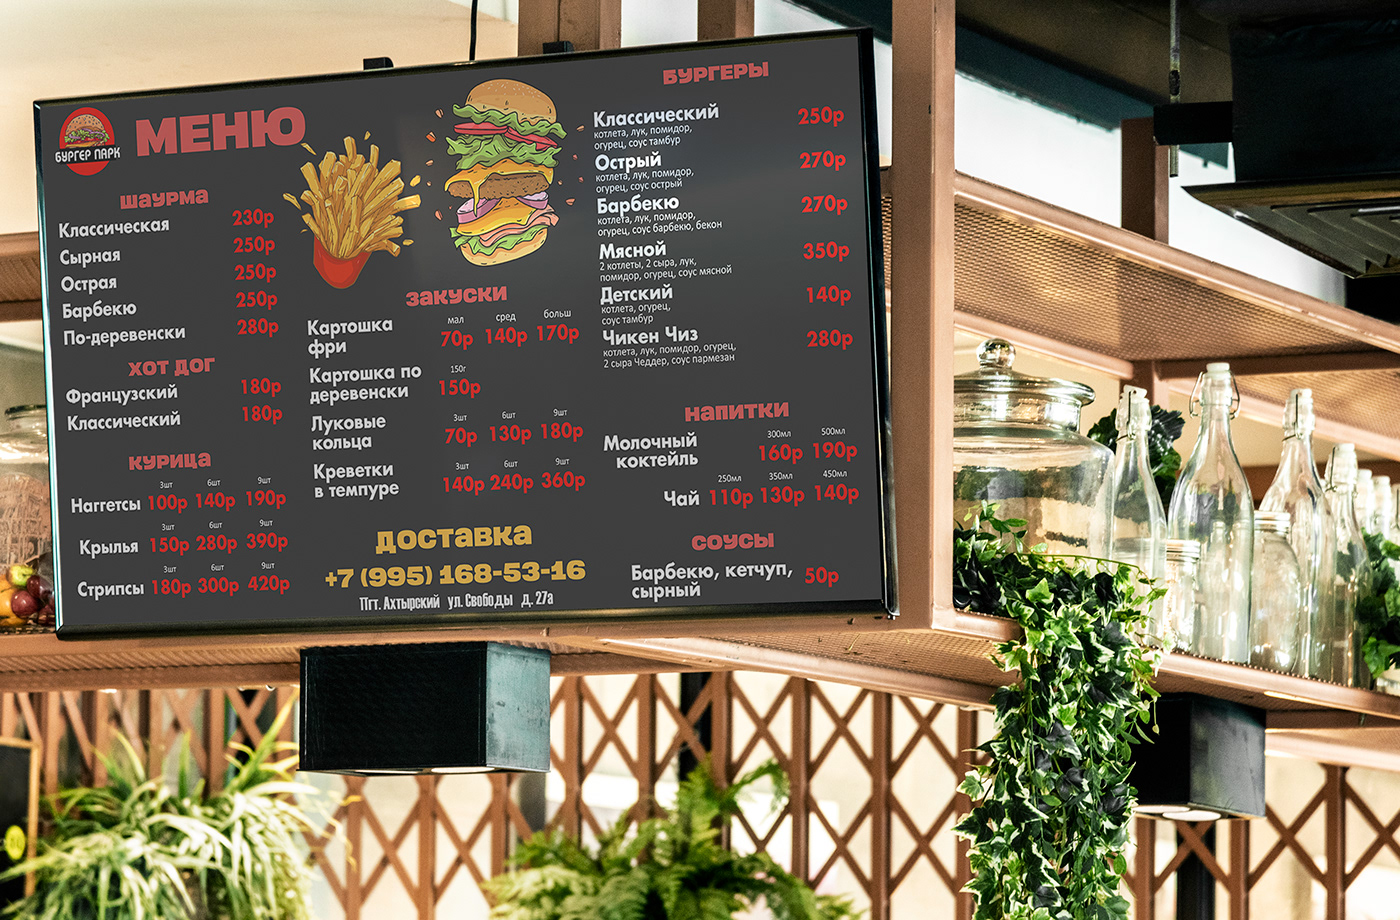 menu Food  Dizajn меню дизайнменю дизайнер designer графическийдизайн